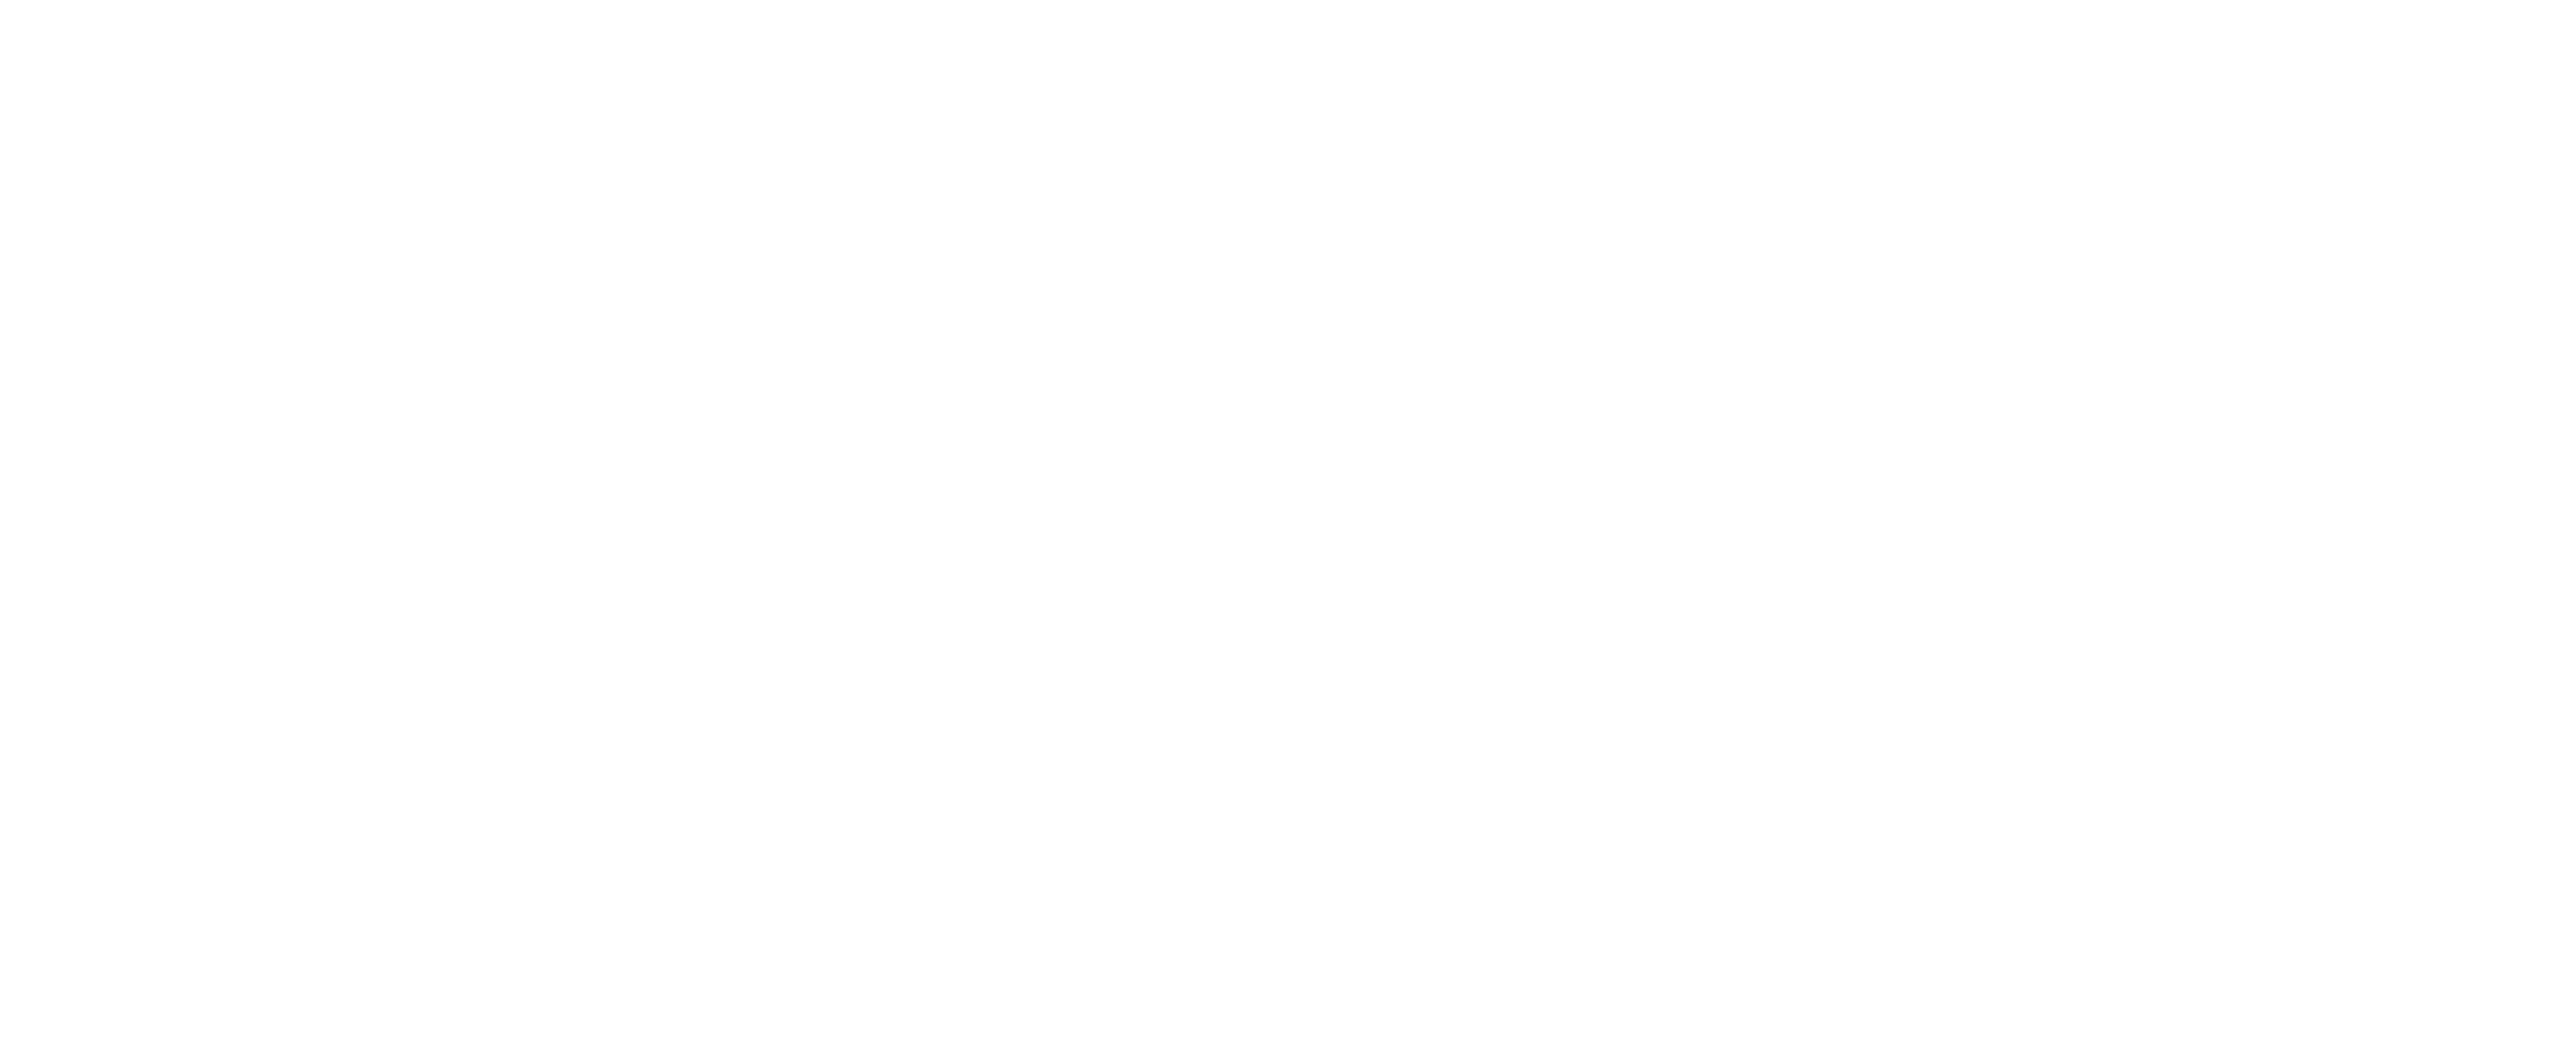 SPC 27 stars logo (white)